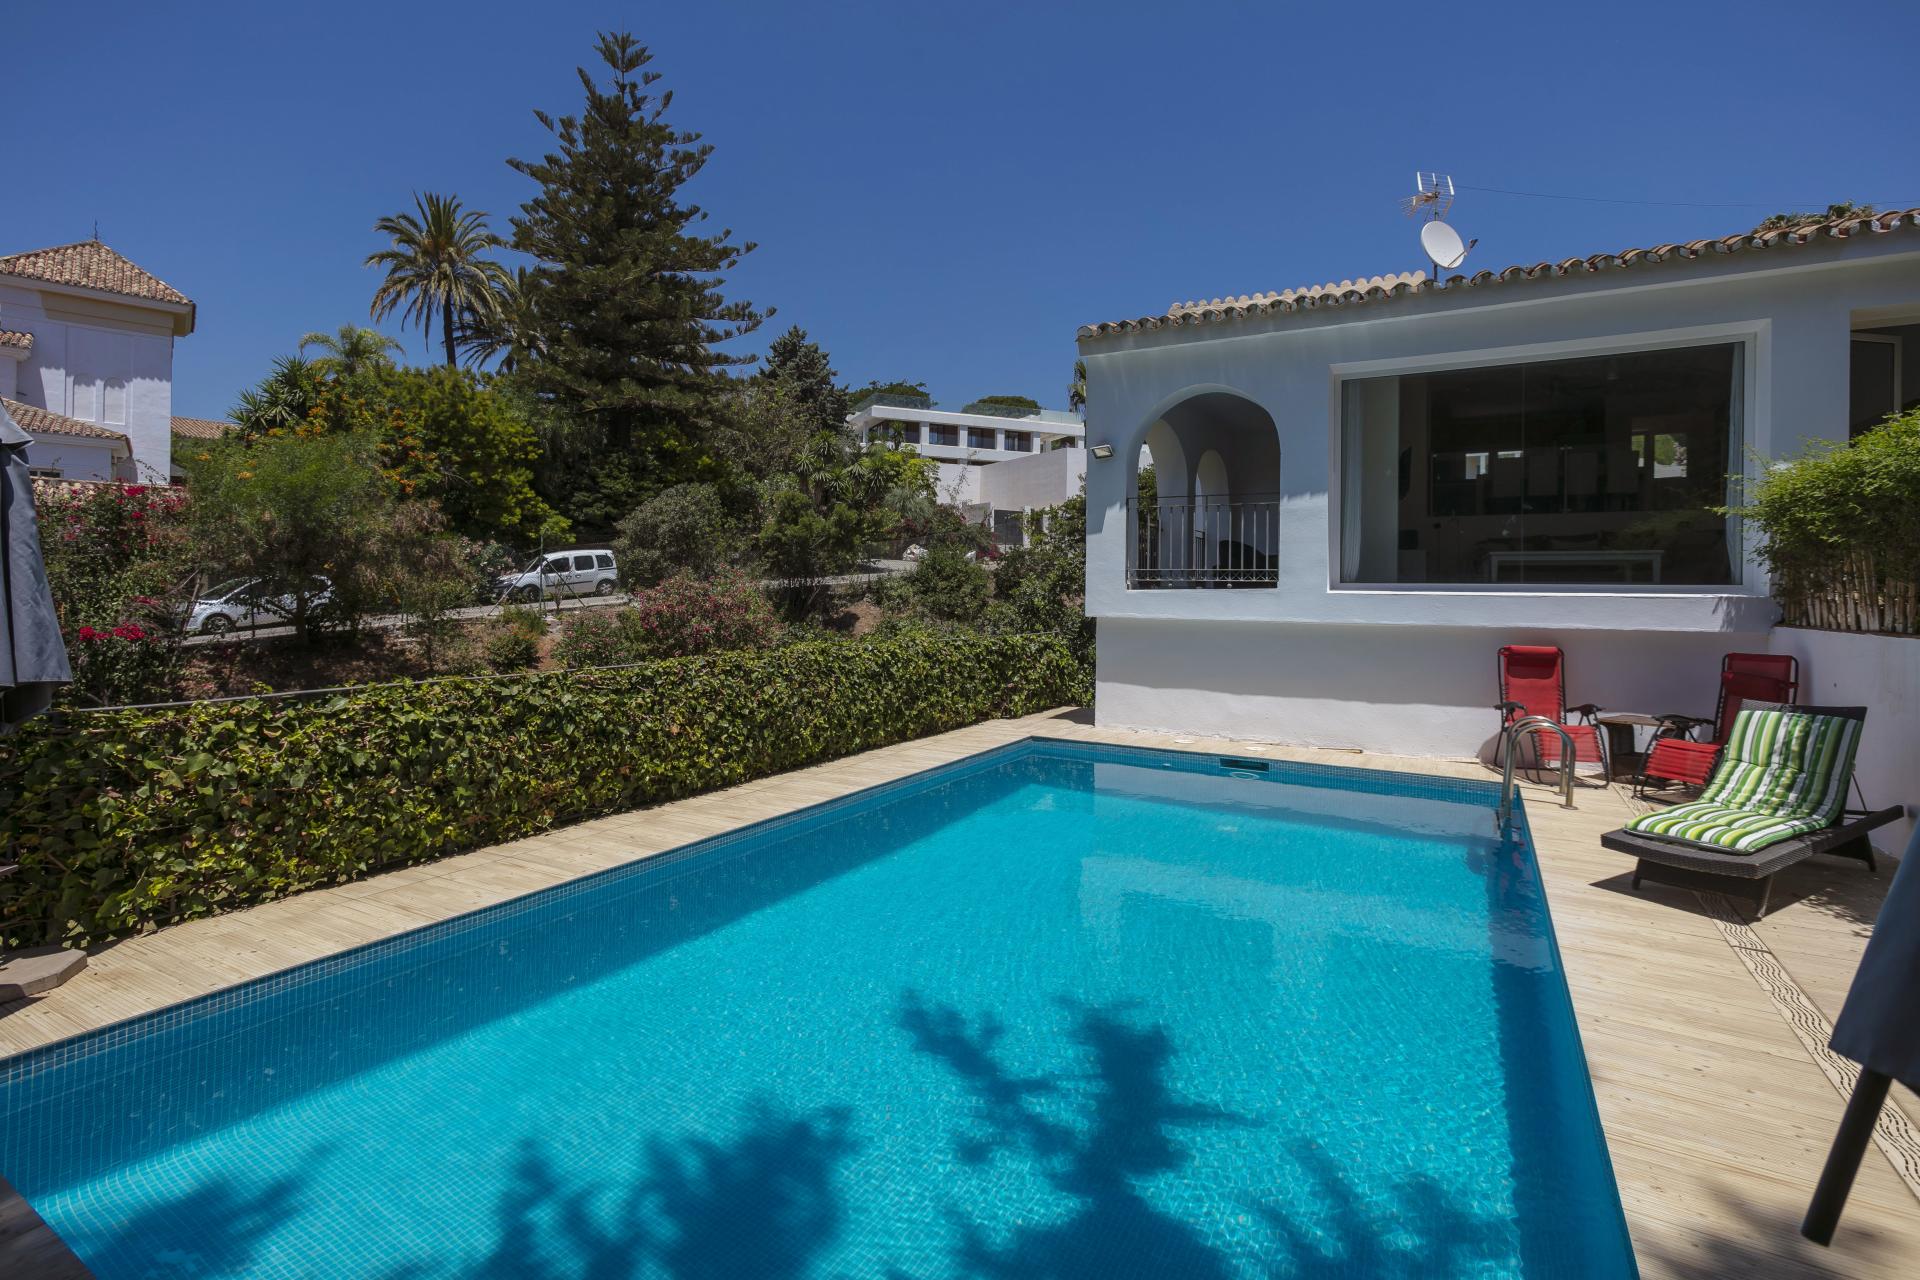 Fantástica villa de cuatro dormitorios con orientación suroeste, ubicada en una calle muy tranquila con muy buenas vistas al mar ya la montaña, en El Rosario, Marbella